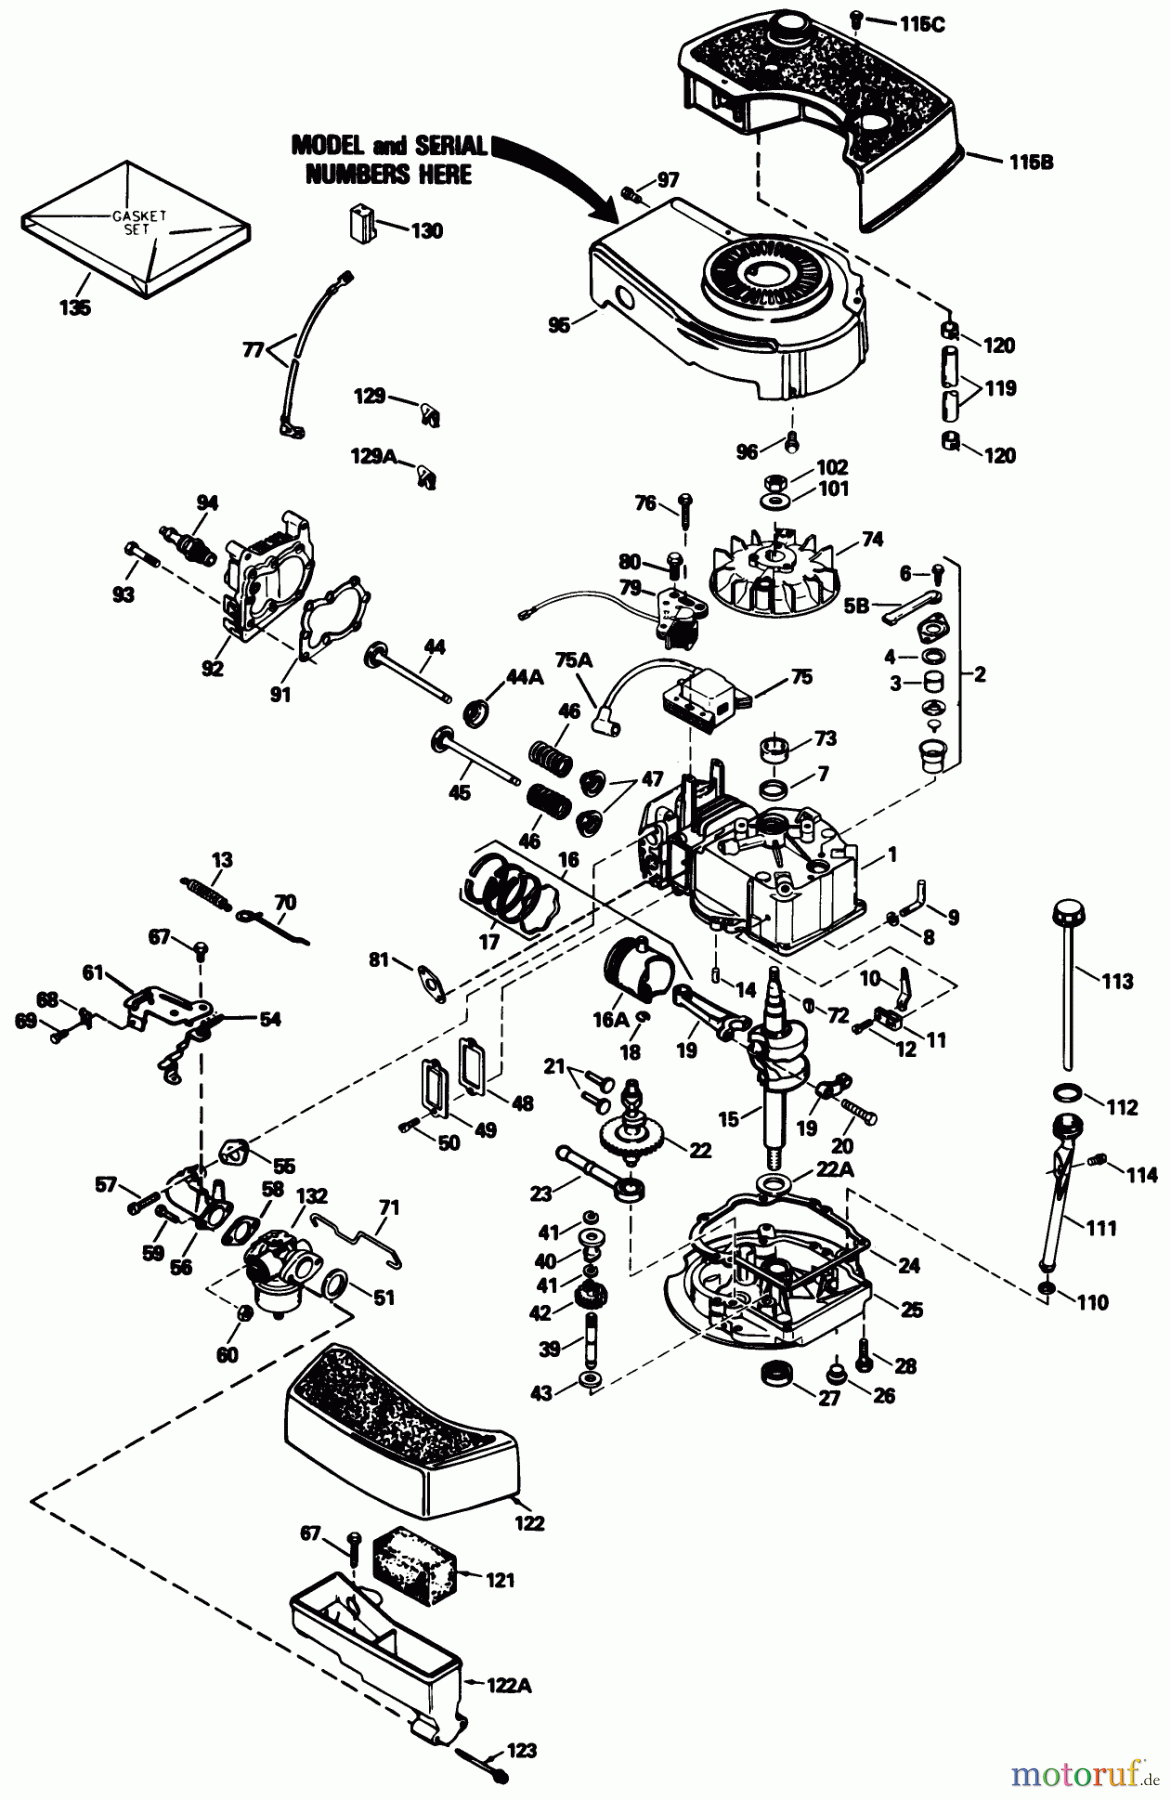  Toro Neu Mowers, Walk-Behind Seite 1 20677 - Toro Lawnmower, 1989 (9000001-9999999) ENGINE MODEL NO. TNT 100-10104F